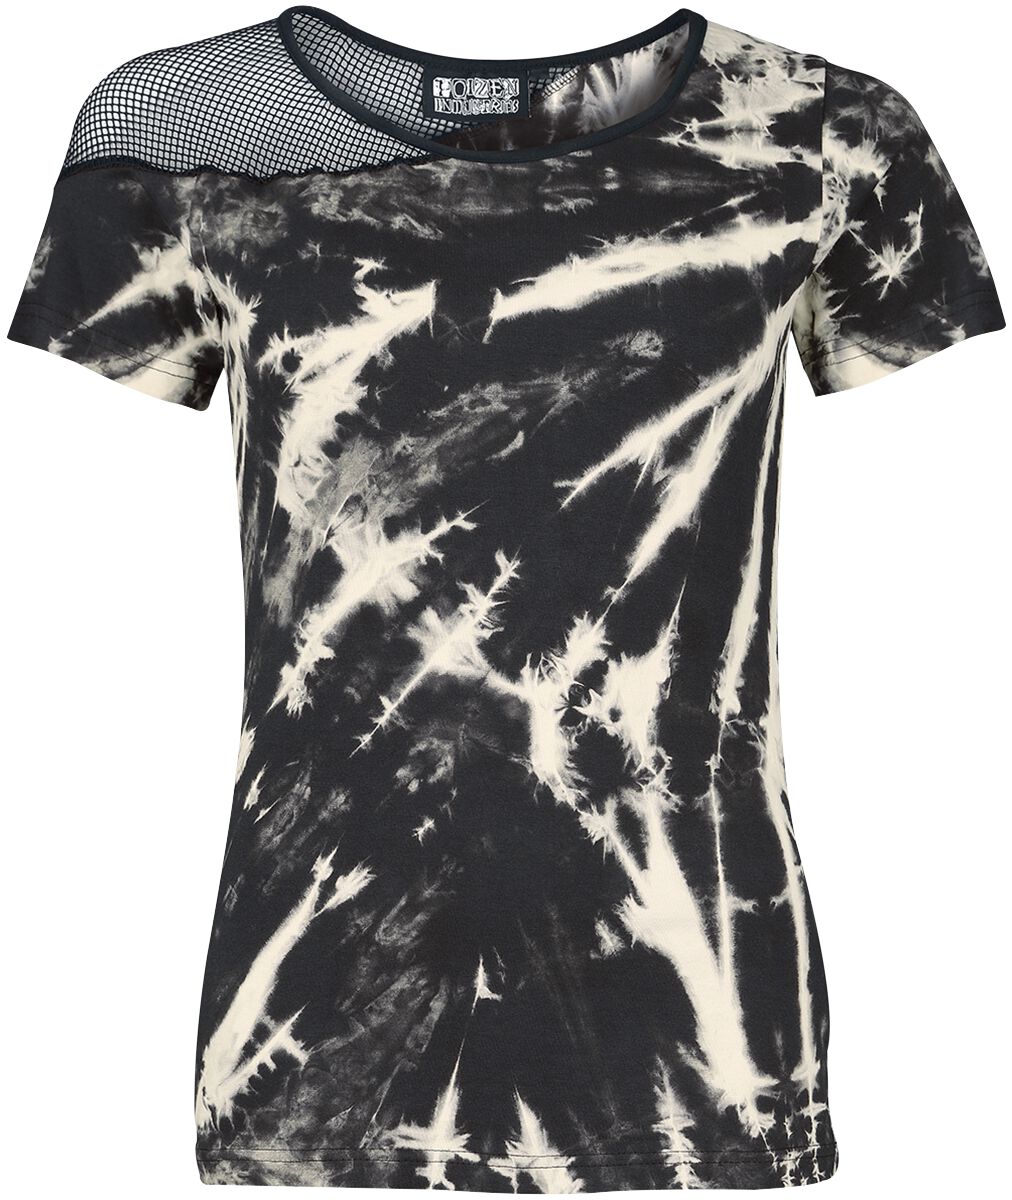 T-Shirt Manches courtes Gothic de Poizen Industries - Sadira Top - XS à 3XL - pour Femme - noir/beig